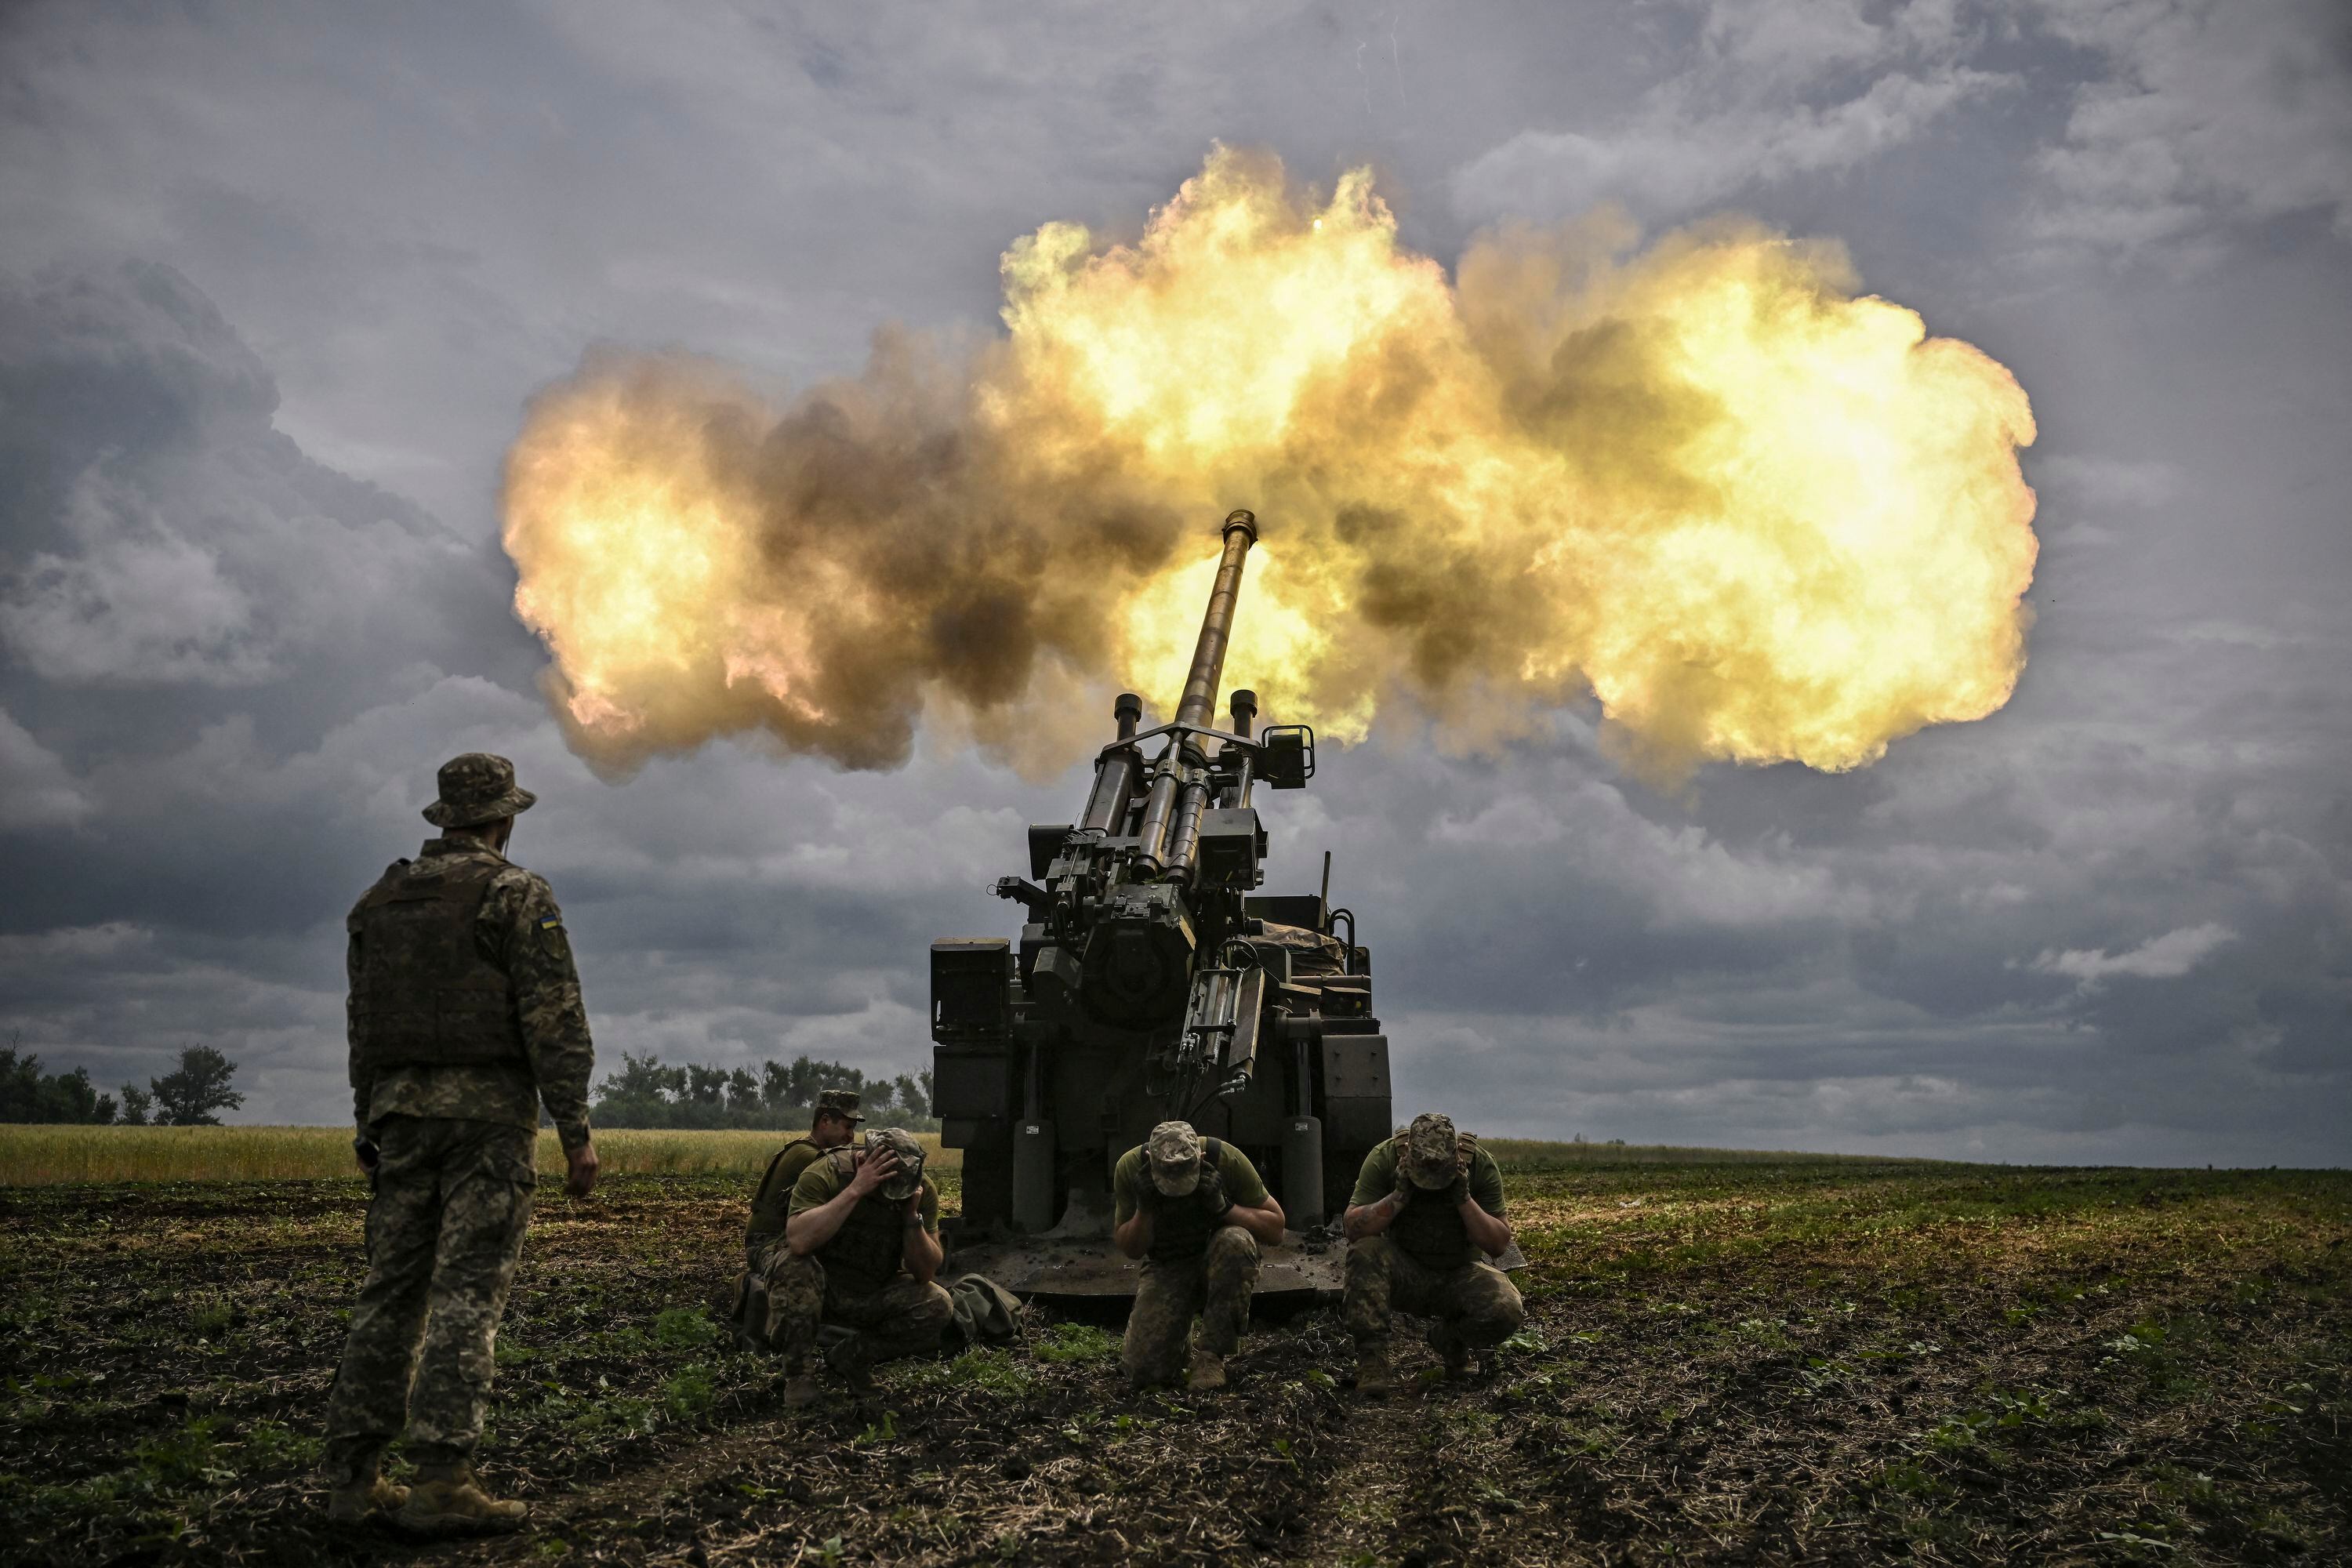 El 15 de junio de 2022, militares ucranianos dispararon con un cañón autopropulsado francés de 155 mm/calibre 52 Caesar hacia posiciones rusas en una línea de frente en la región oriental ucraniana de Donbas.